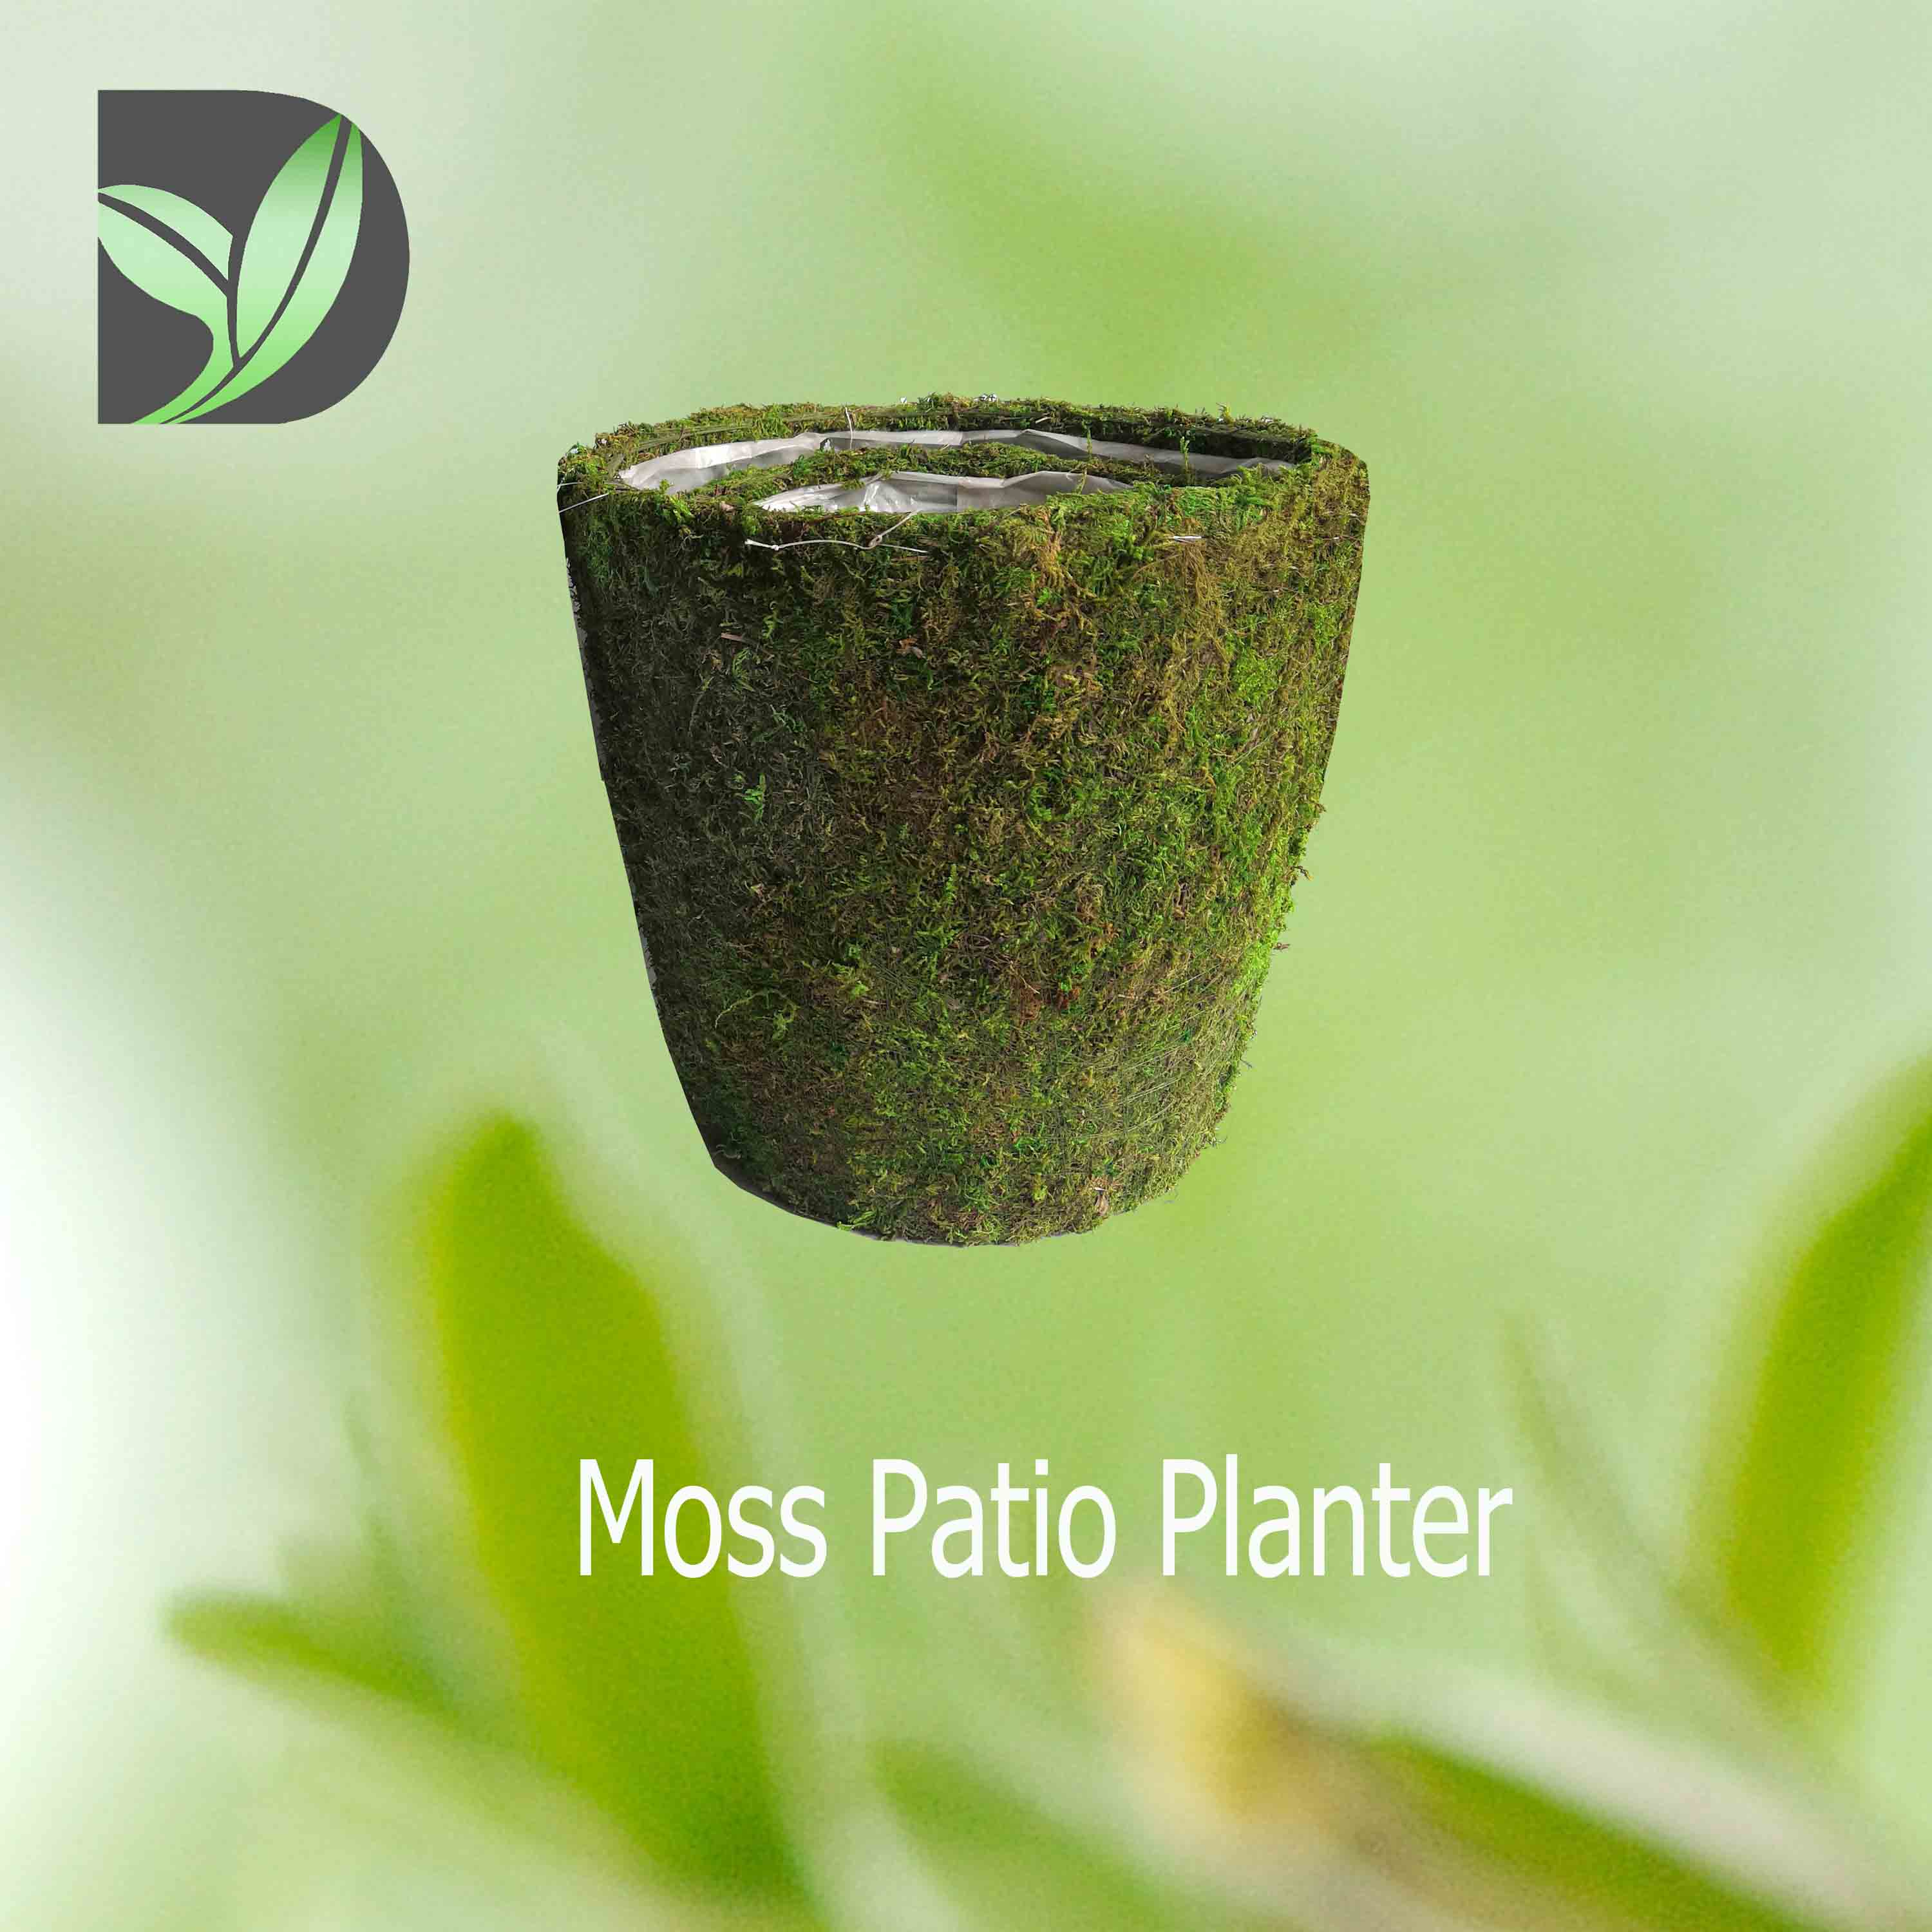 Moss Patio Planter